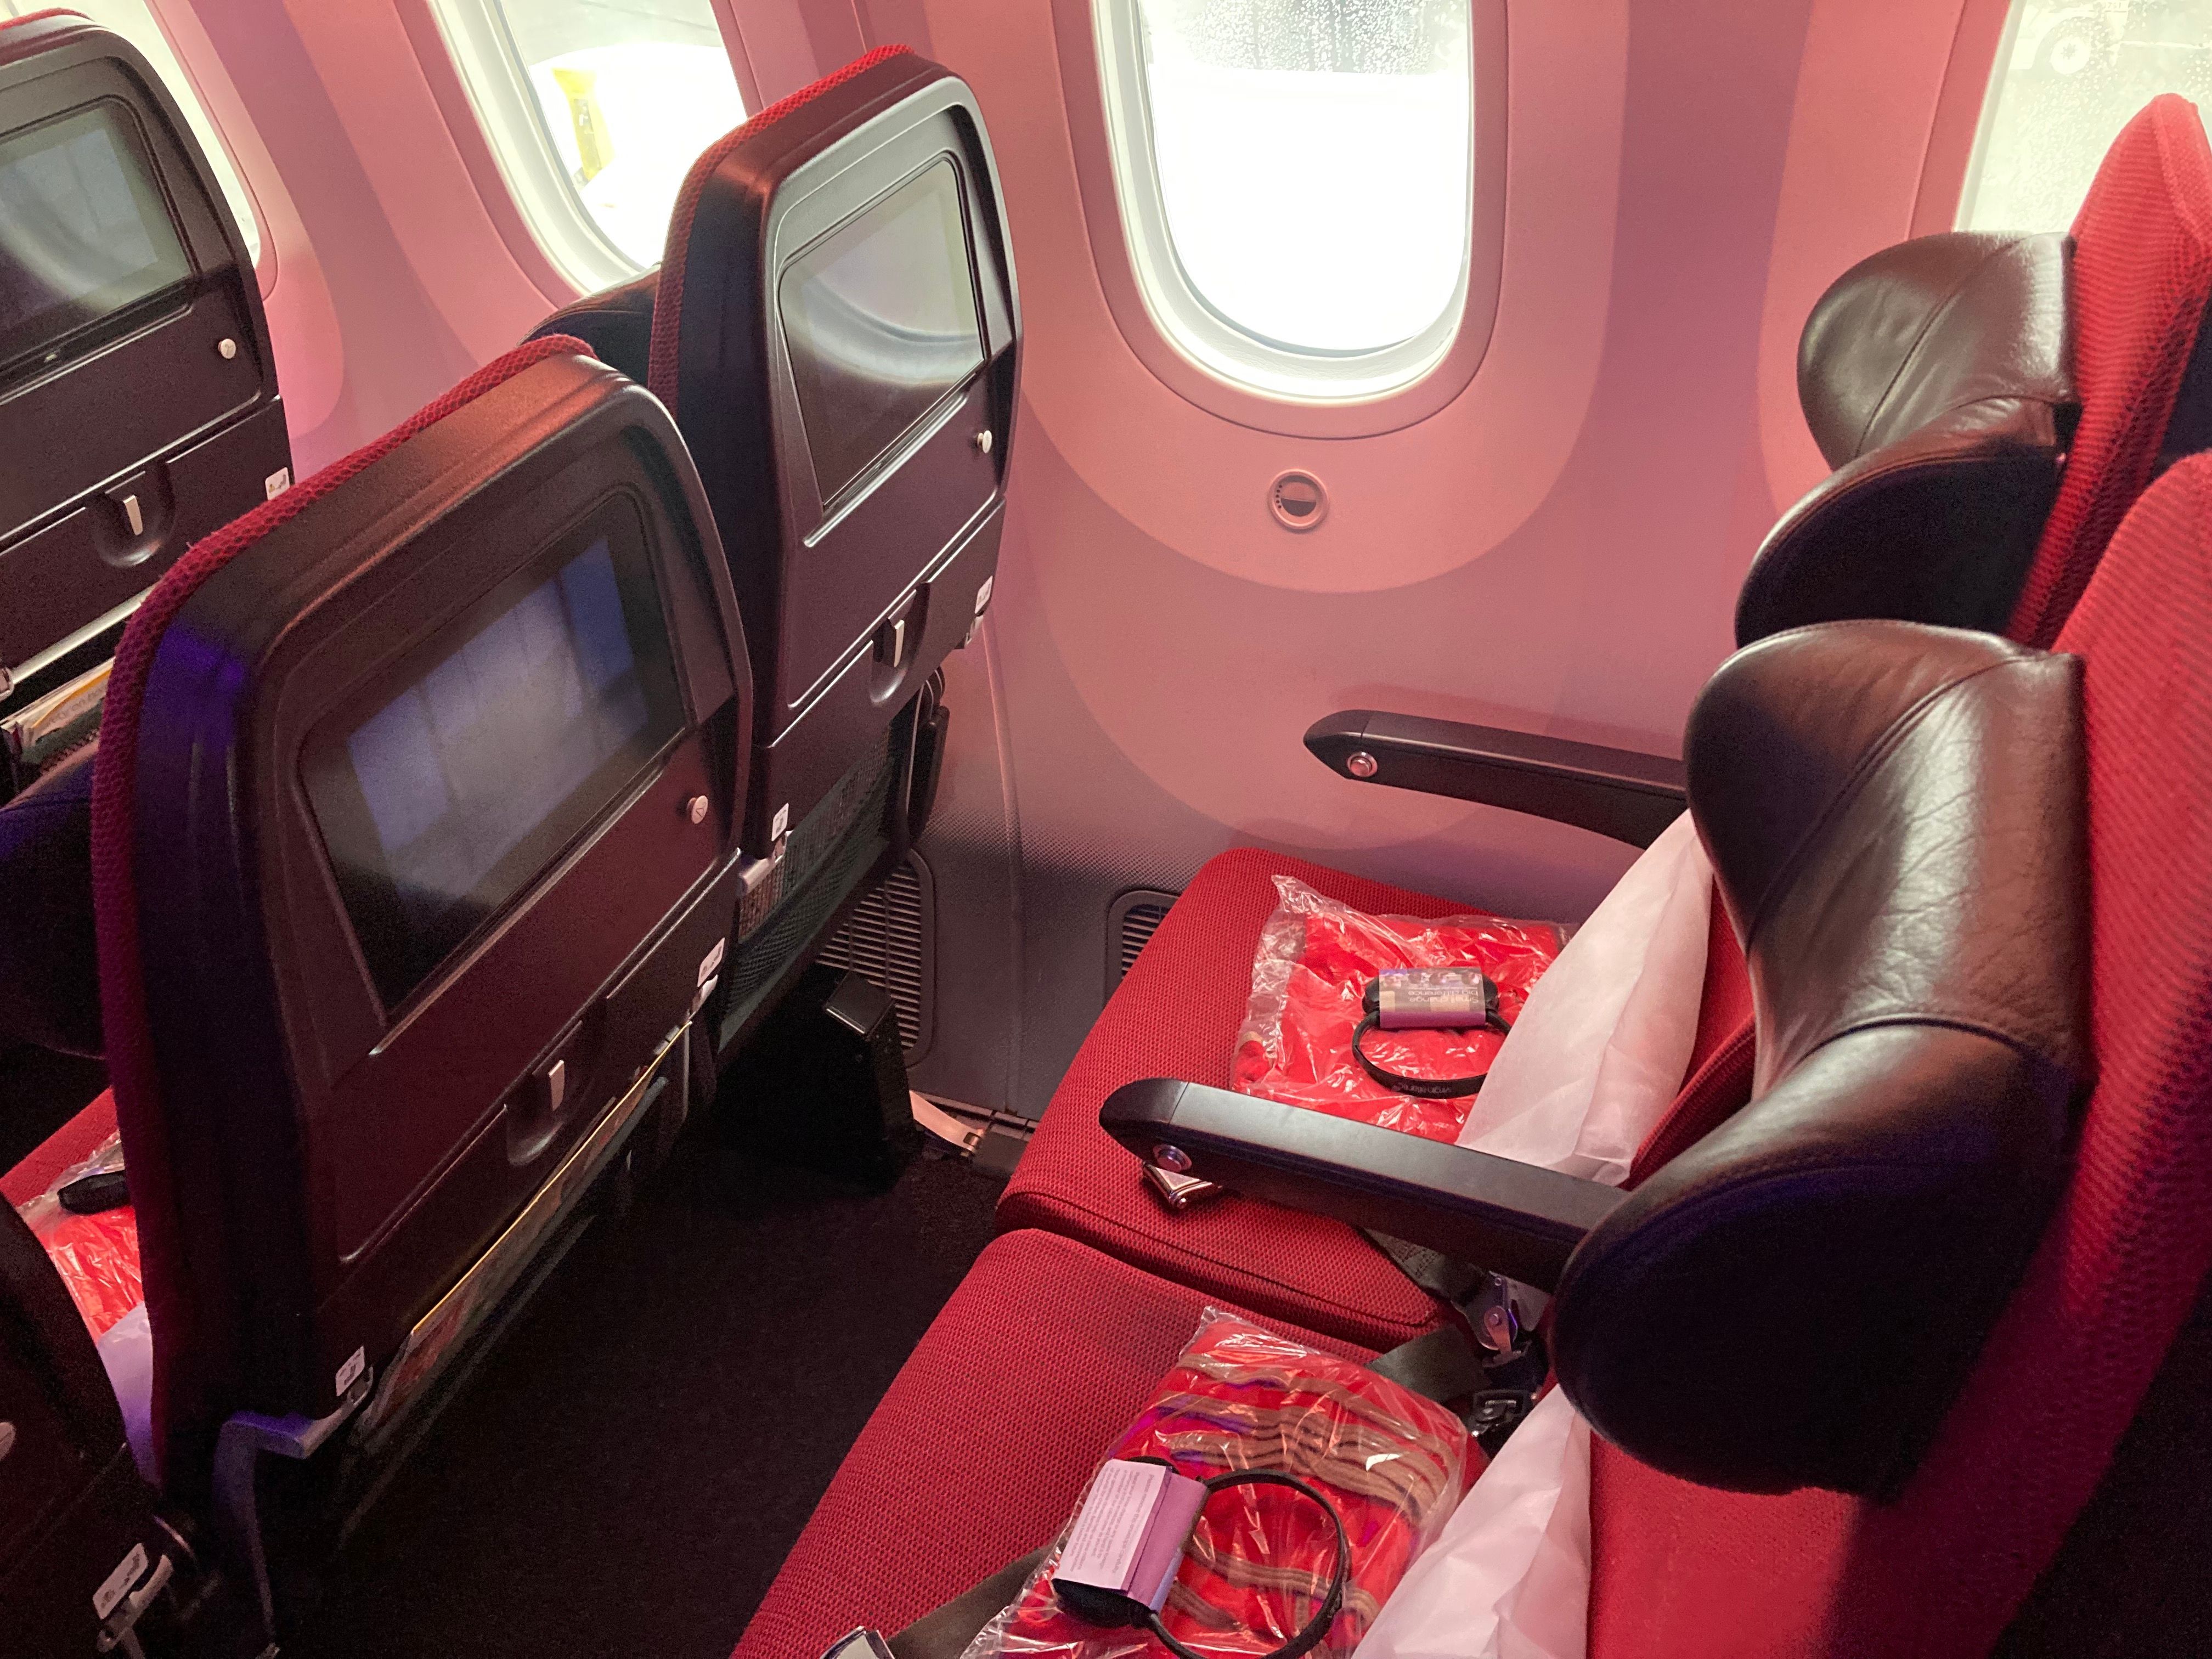 Virgin Atlantic 787 economy seat